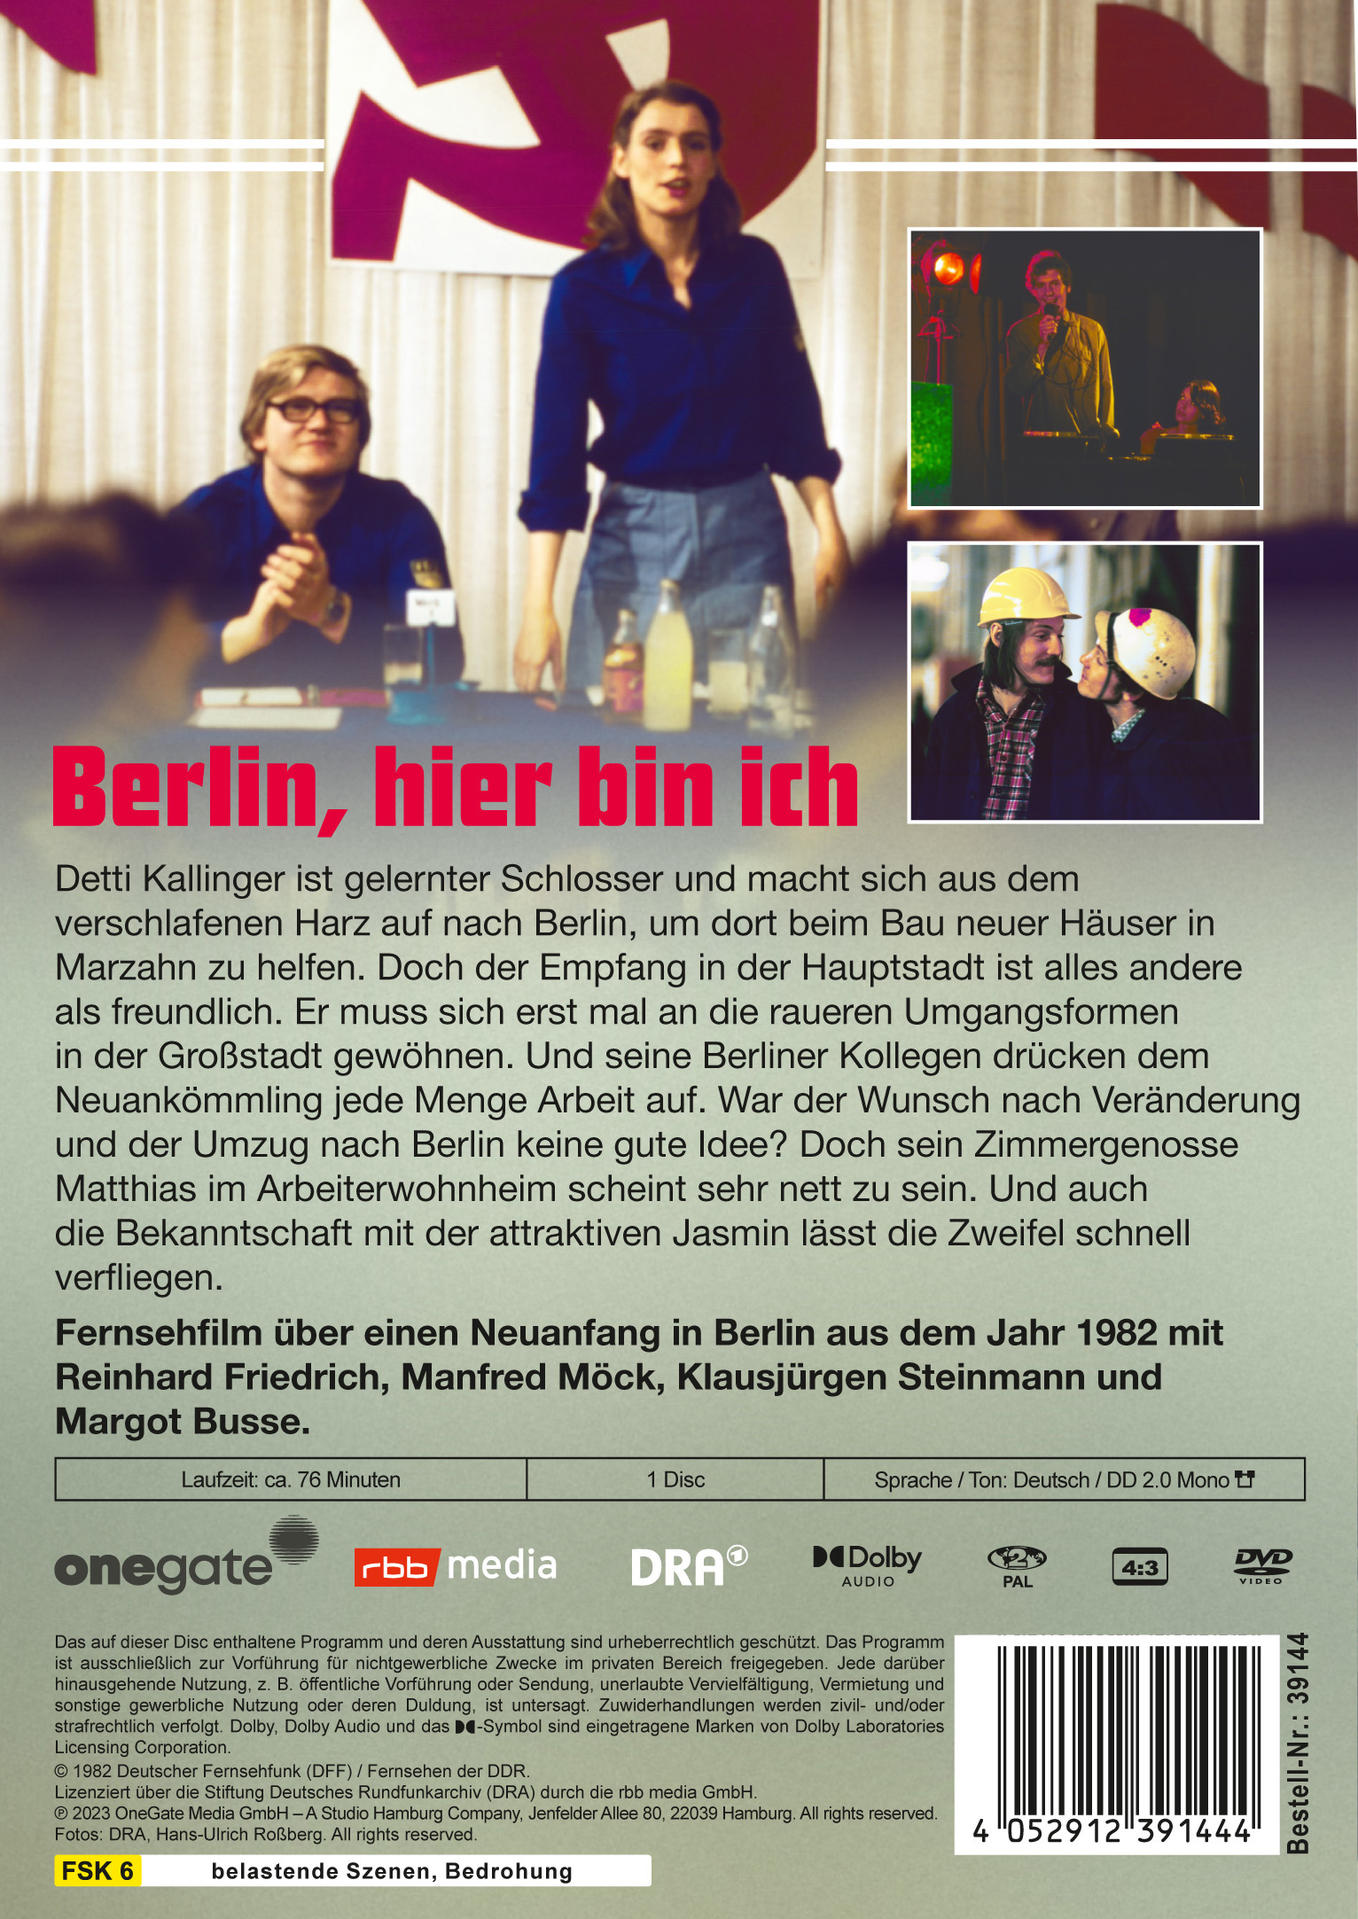 hier ich Berlin, DVD bin